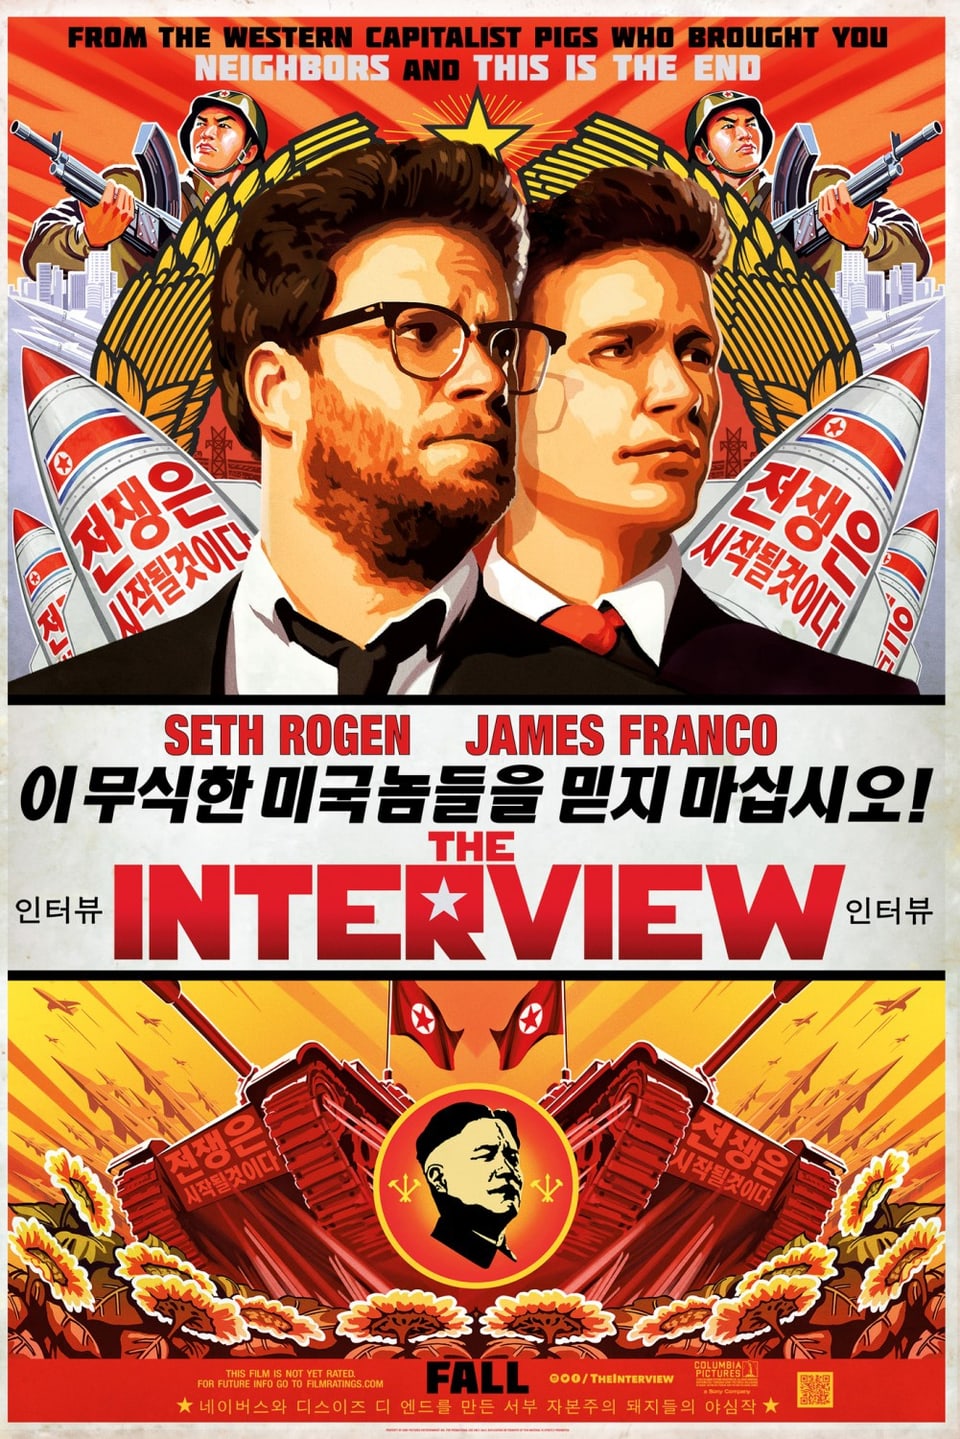 Ein Kino-Poster zeigt die Darsteller Seth Rogen und James Franco und Kim Jong-un in nordkoreanischer Manier. 